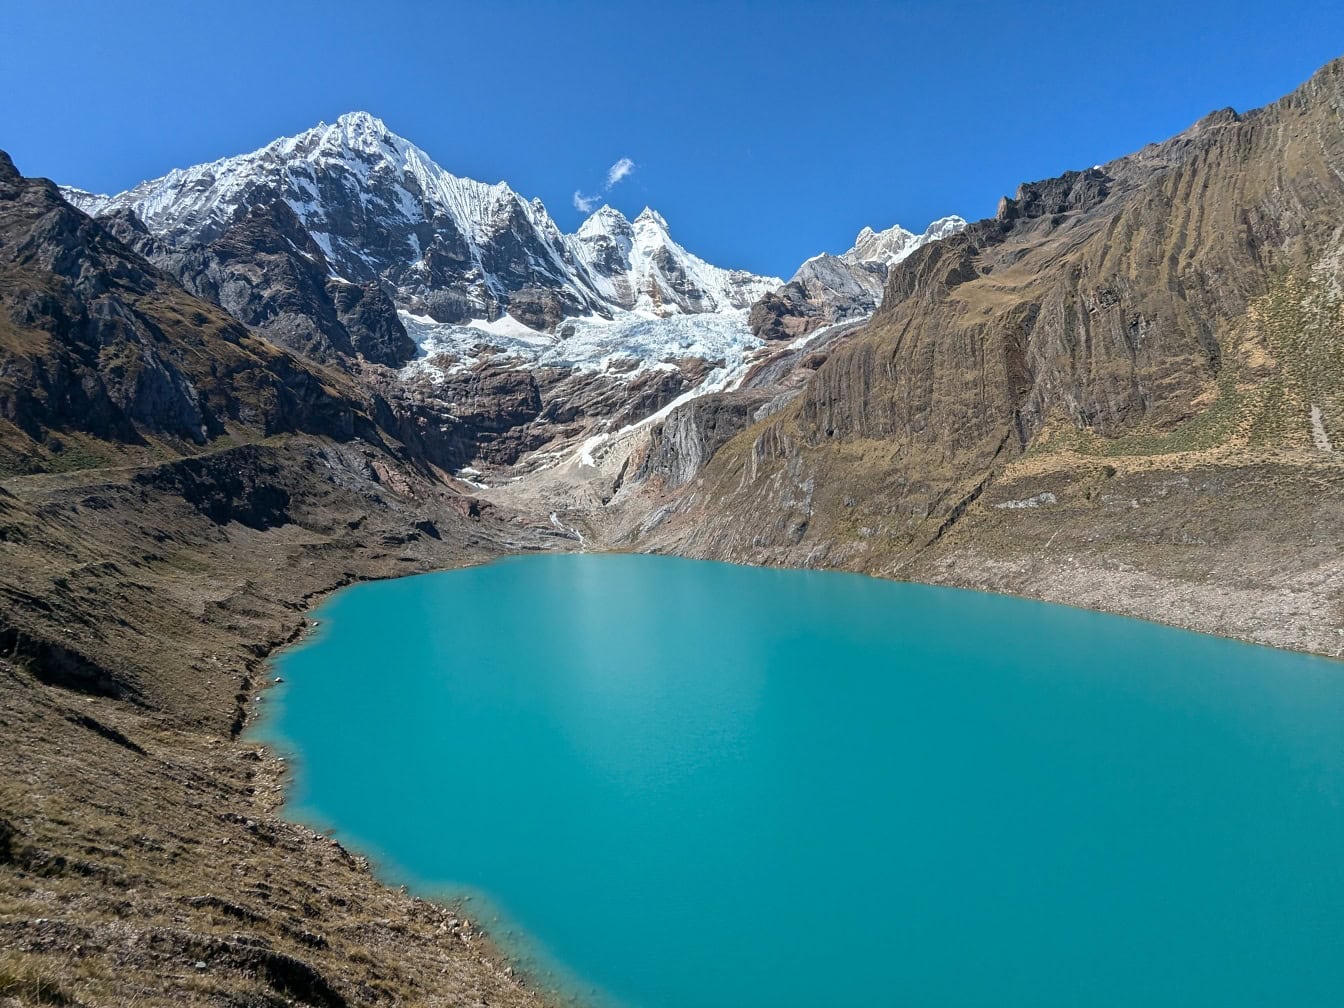 Une vue panoramique sur le lac turquoise de Llanguanco dans le parc naturel de la cordillère Huayhuash dans les Andes au Pérou